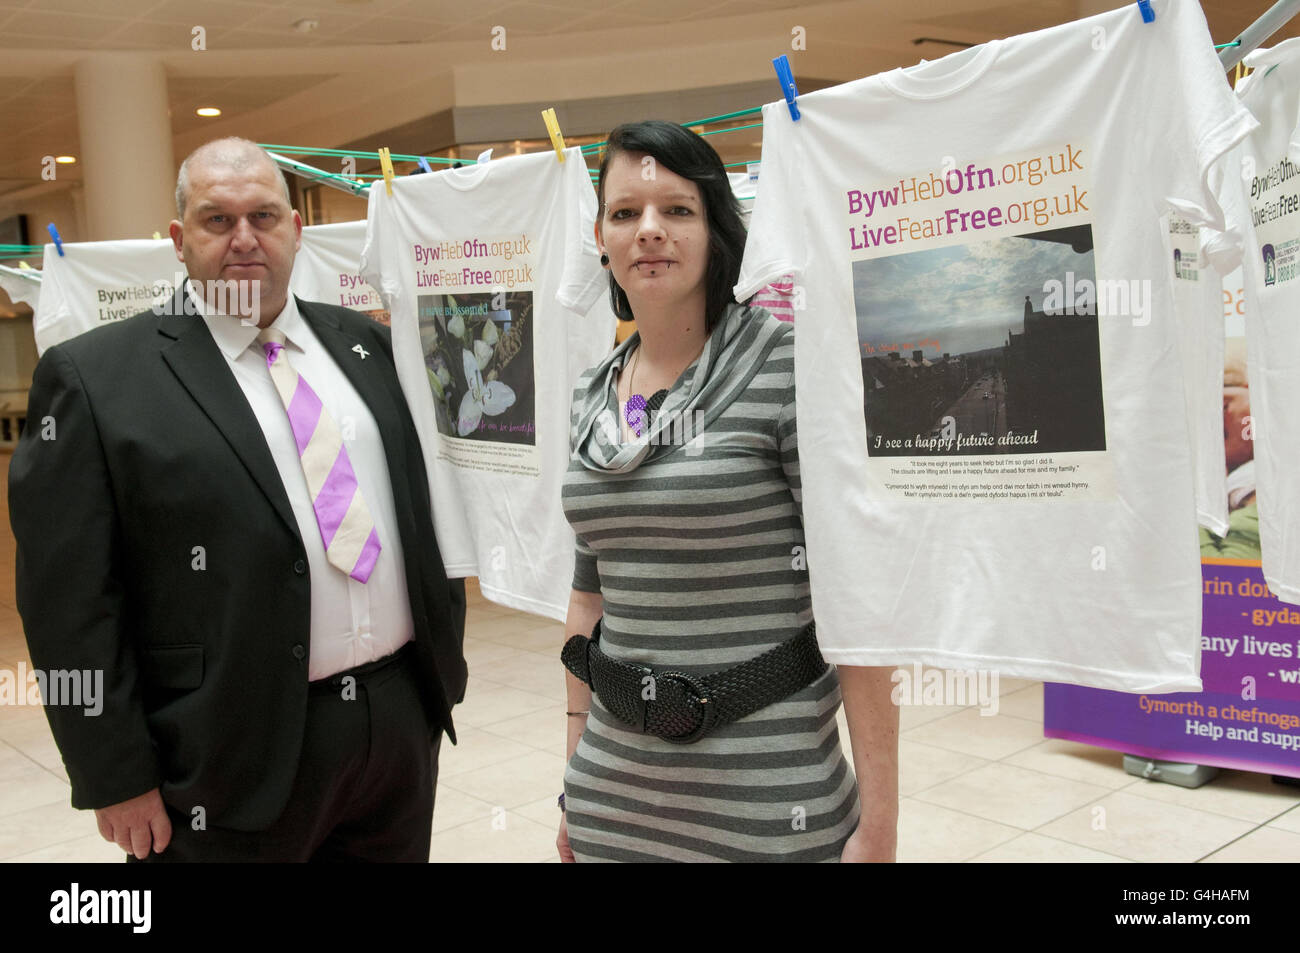 Il ministro del Governo dell'Assemblea Carl Sargeant e la vittima della violenza domestica Rebecca Jones hanno partecipato oggi al lancio della campagna anti-abuso Live Fear Free a Cardiff. Foto Stock